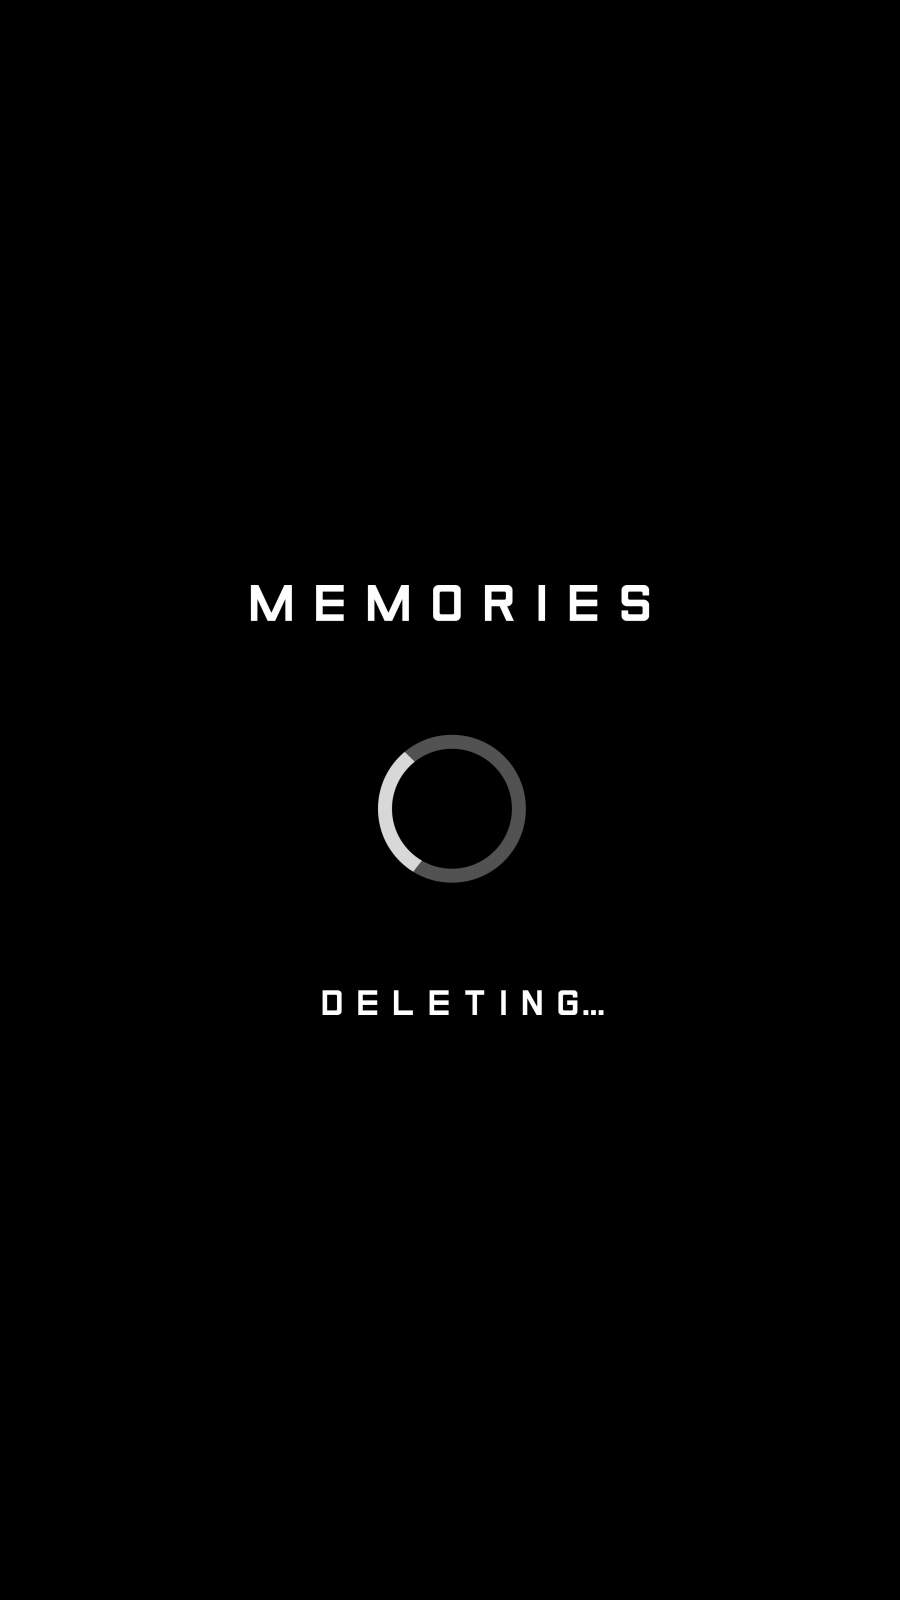 Memories Deleting